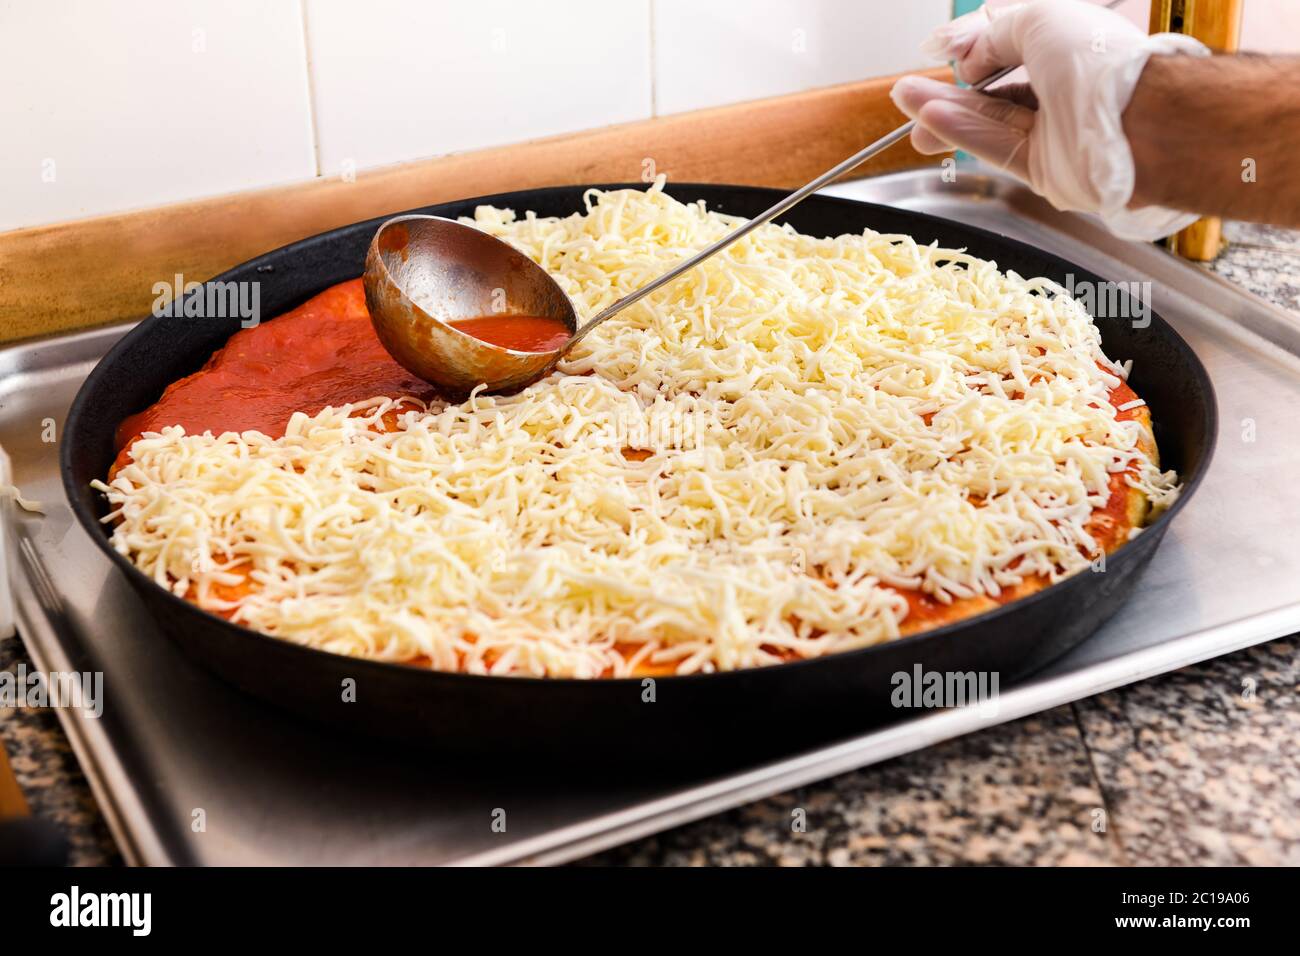 Der Koch löffelt Tomatenmark auf eine Pizzakruste, die mit Mozzarella-Käse in einer Pfanne bestreut wird, während er in einer Pizzeria zubereitet wird Stockfoto